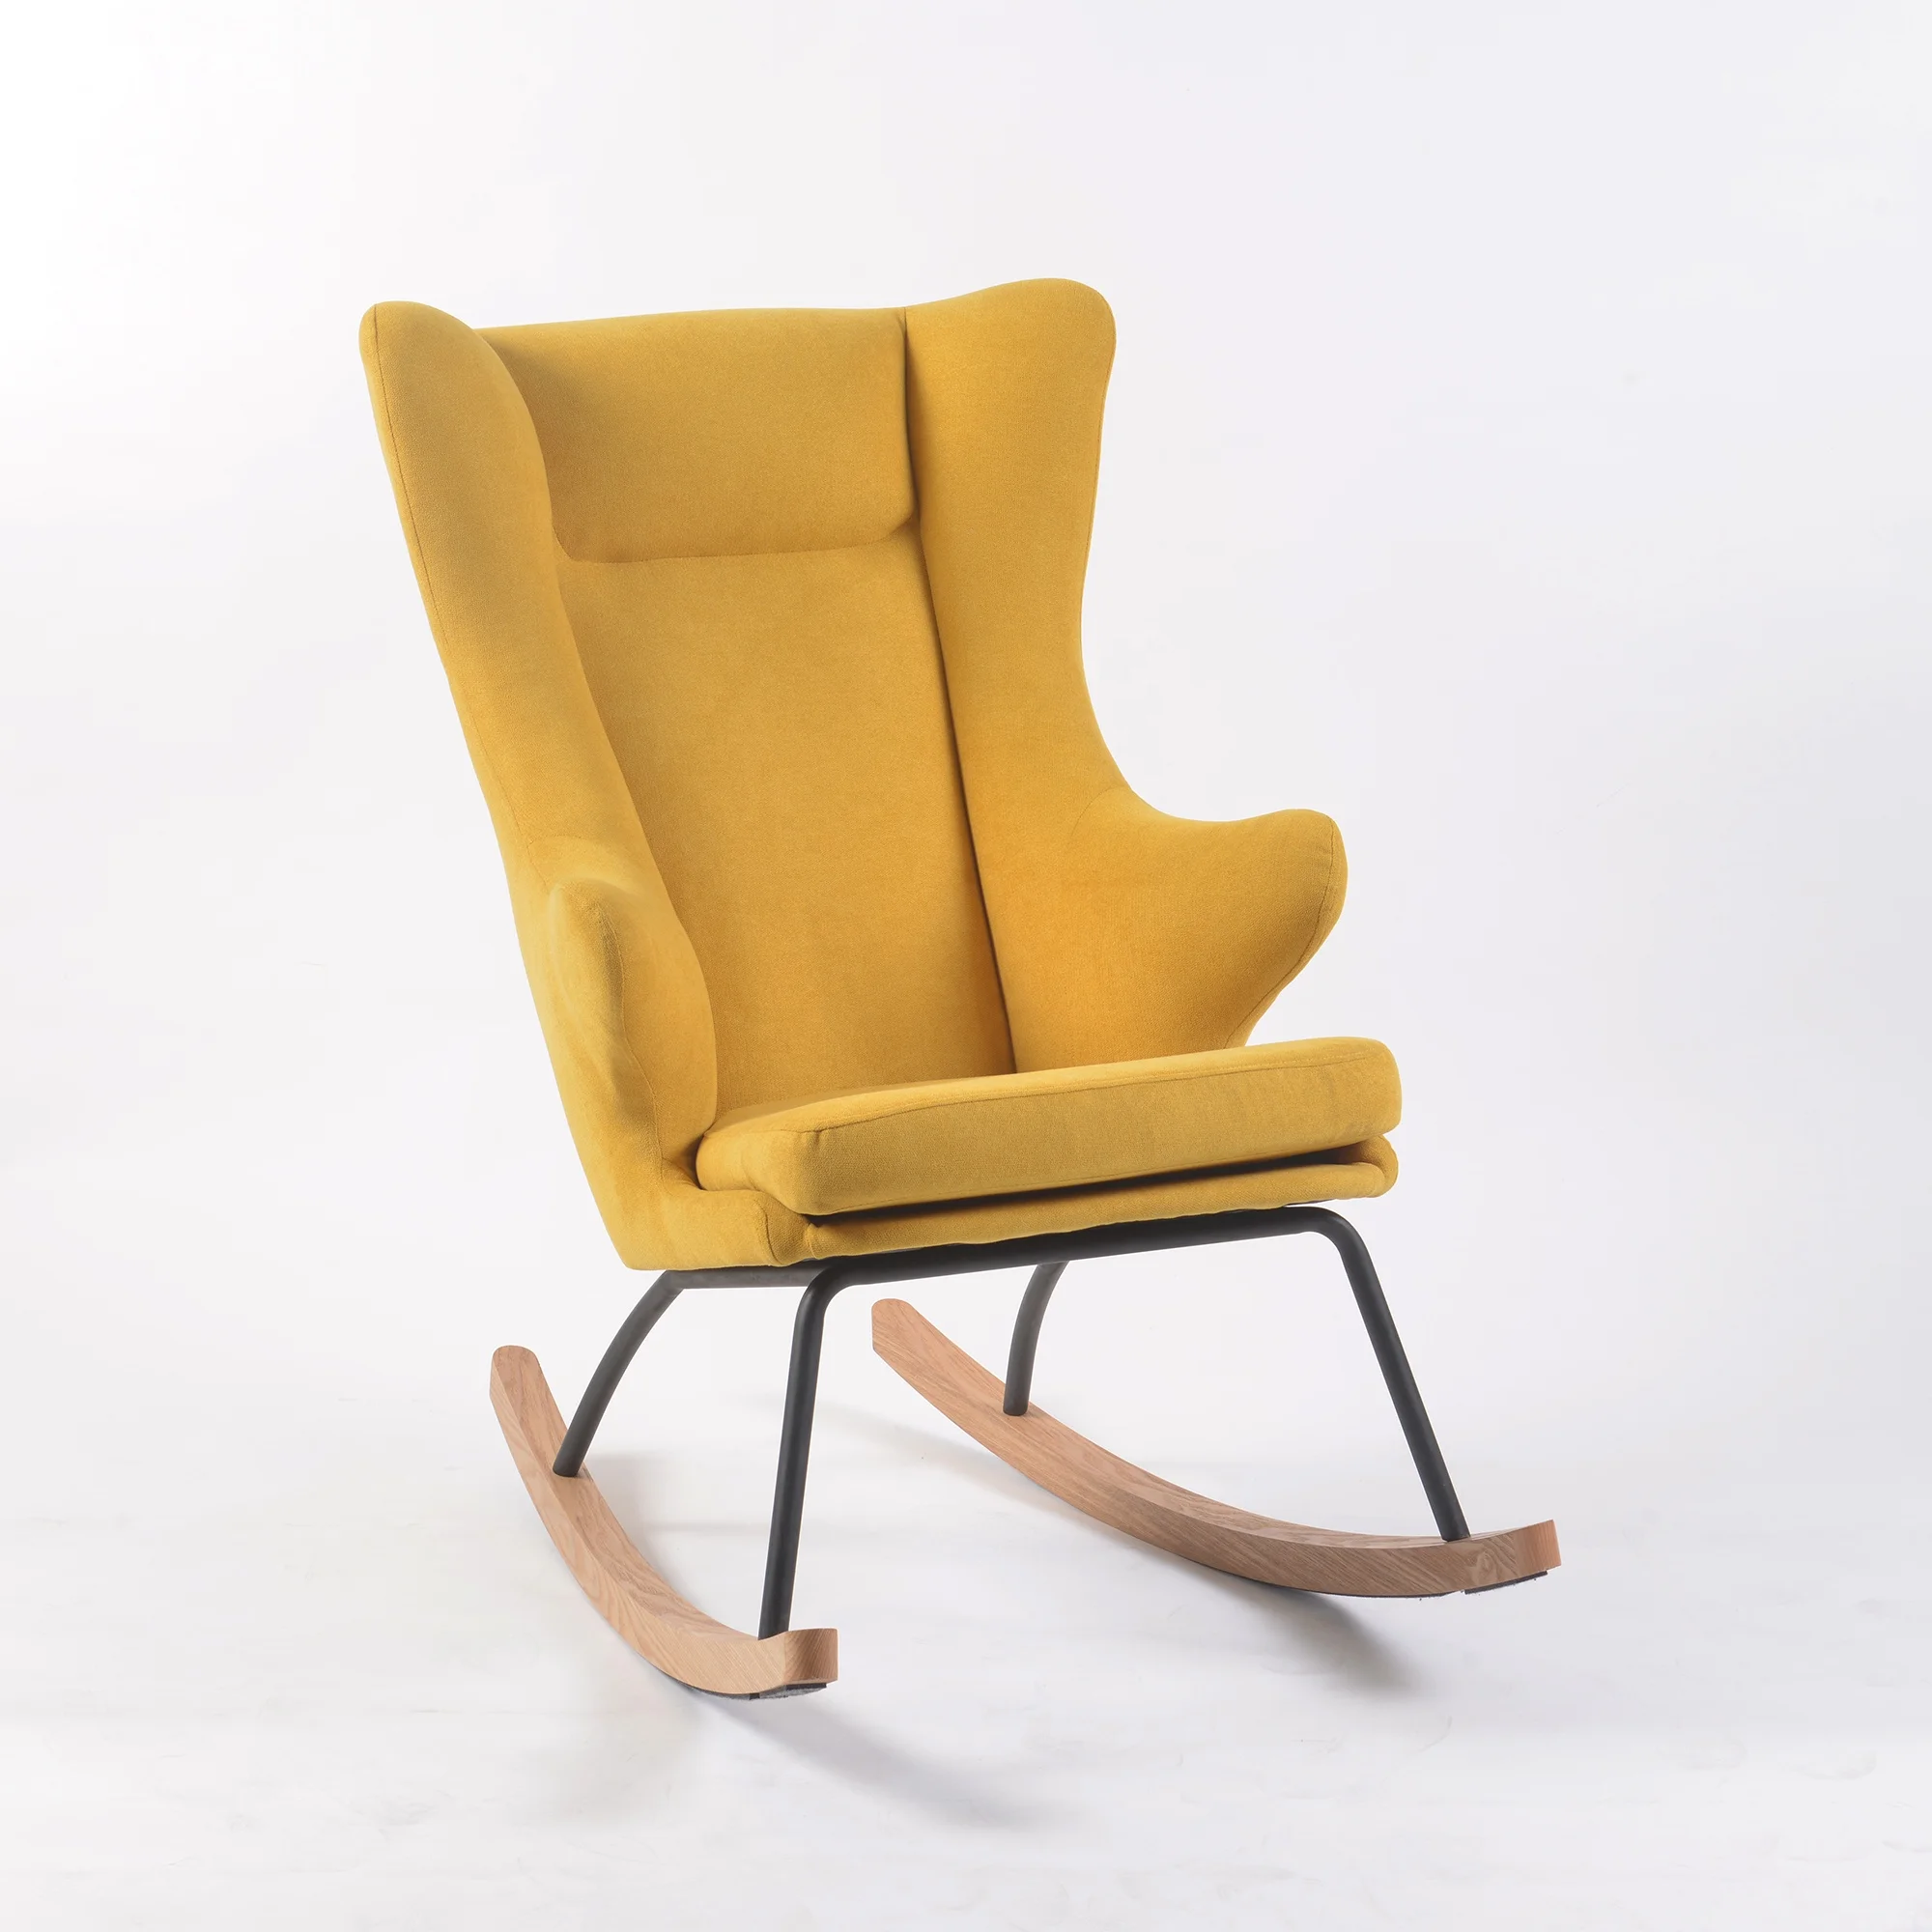 stylish glider chair